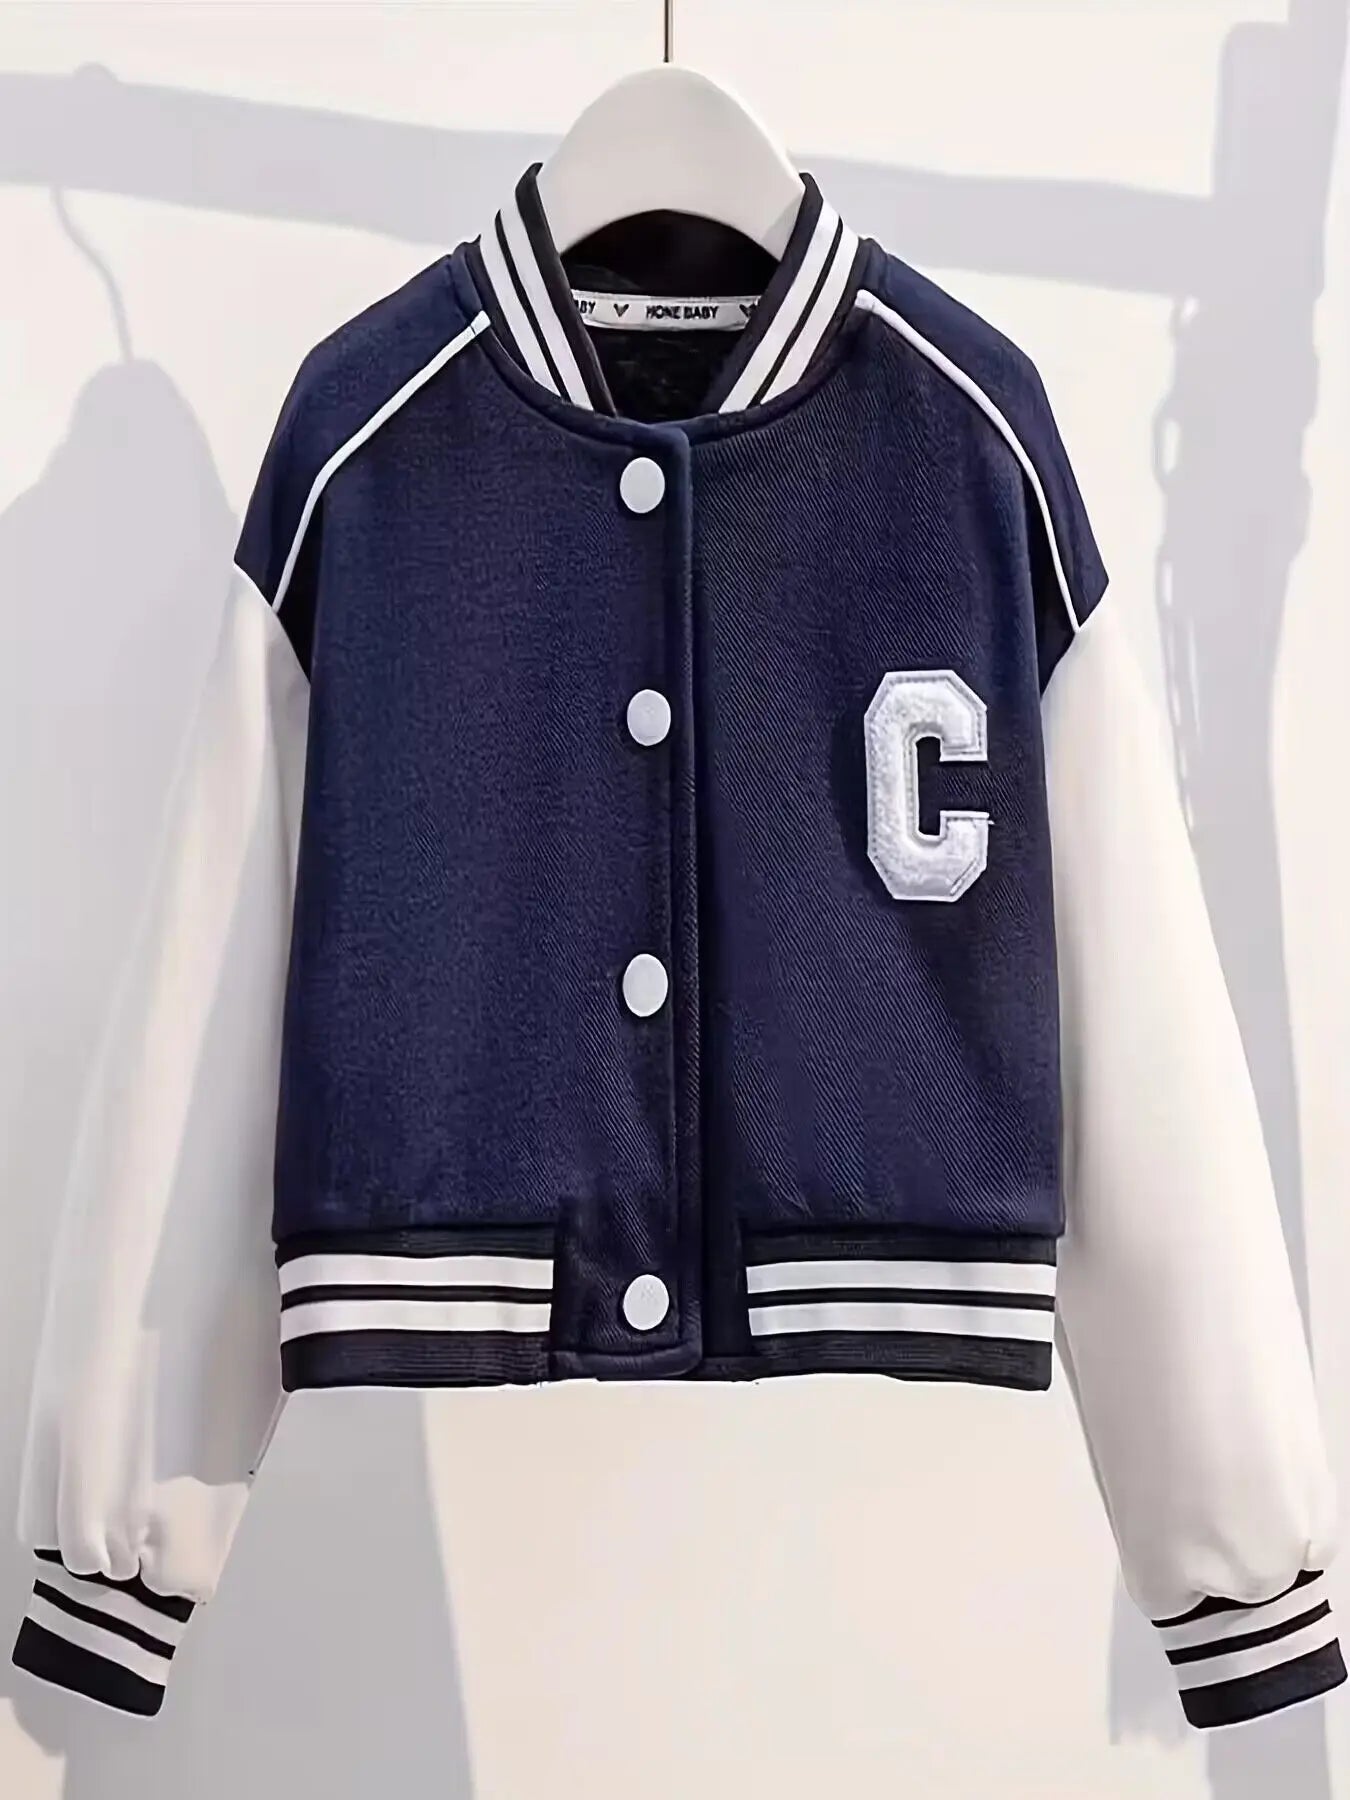 Junior-Kinder-Baseball-Uniform-Anzug mit Spleißbuchstaben-Jacke